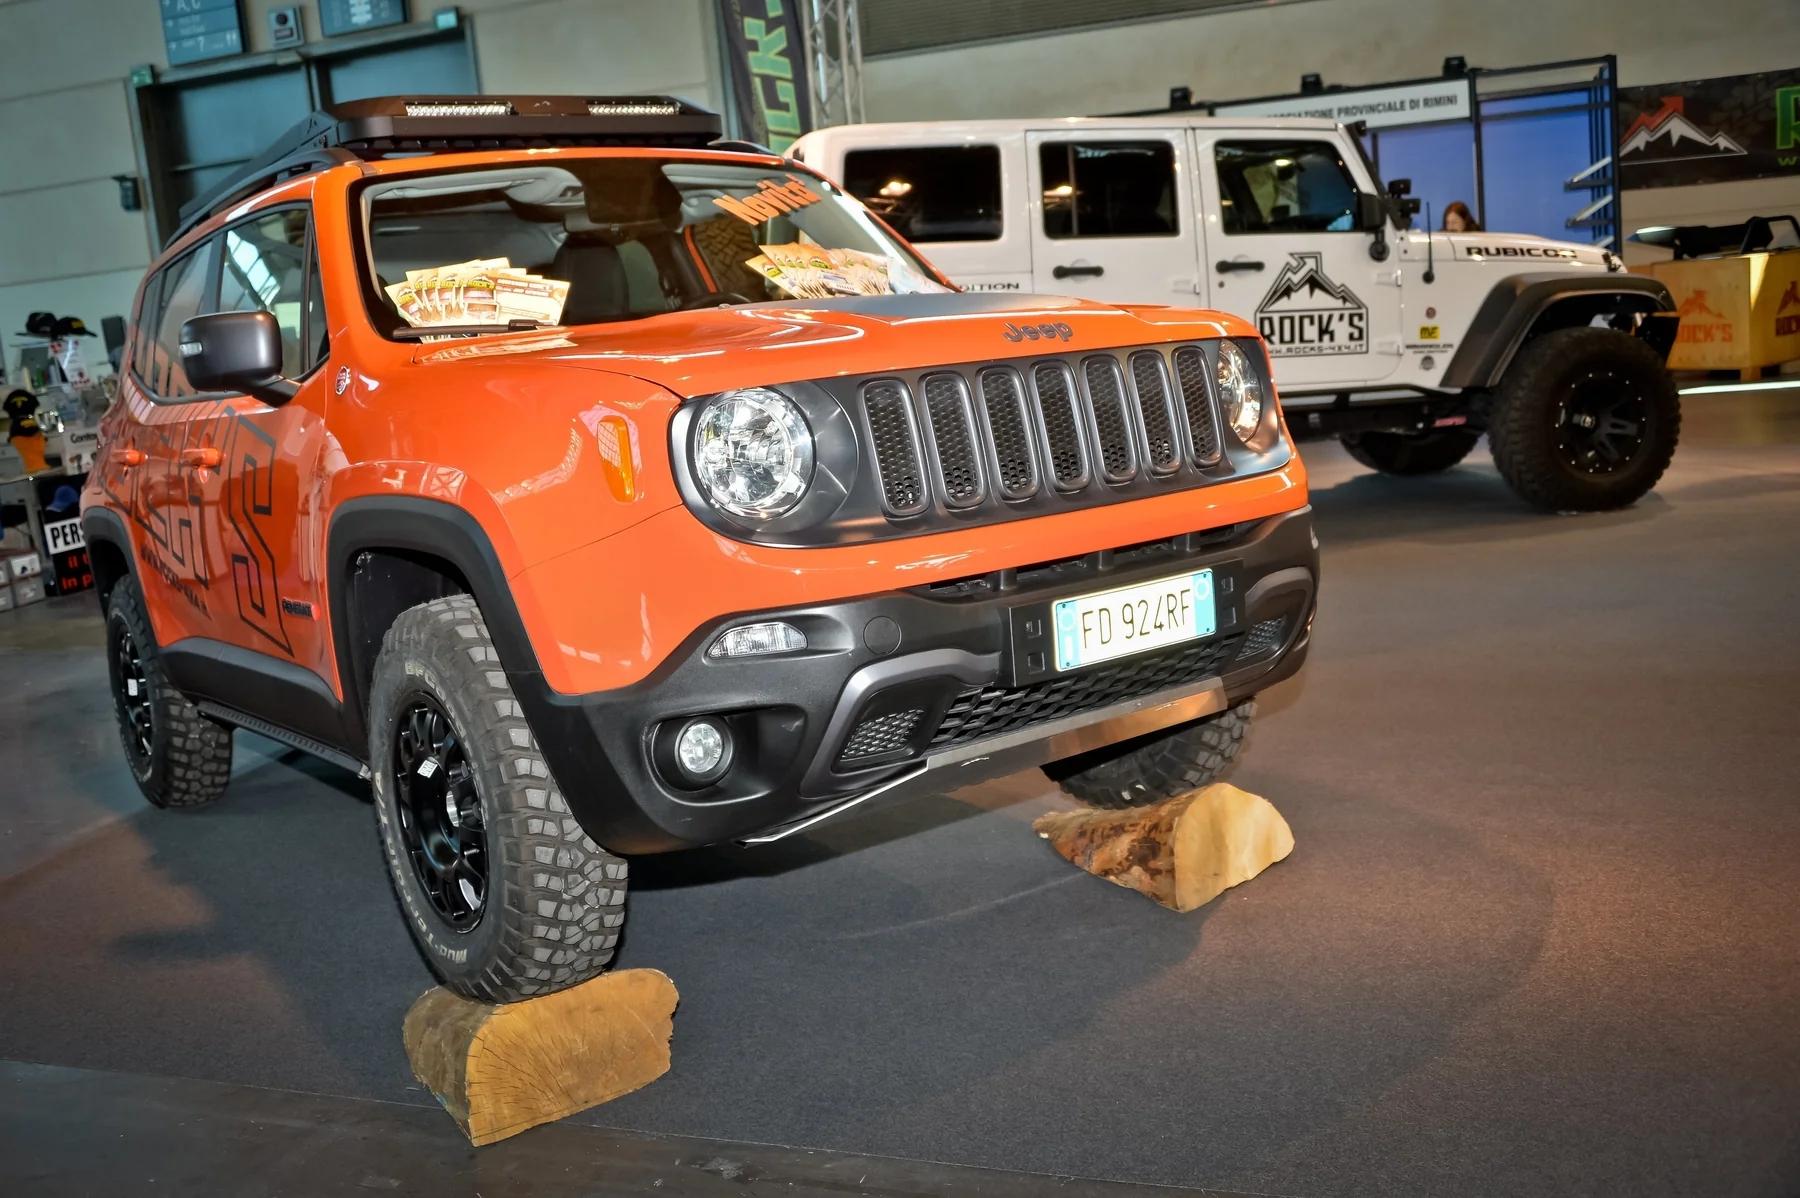 Piastra Protezione Anteriore ROCK'S in alluminio - per Jeep Renegade TRAILHAWK